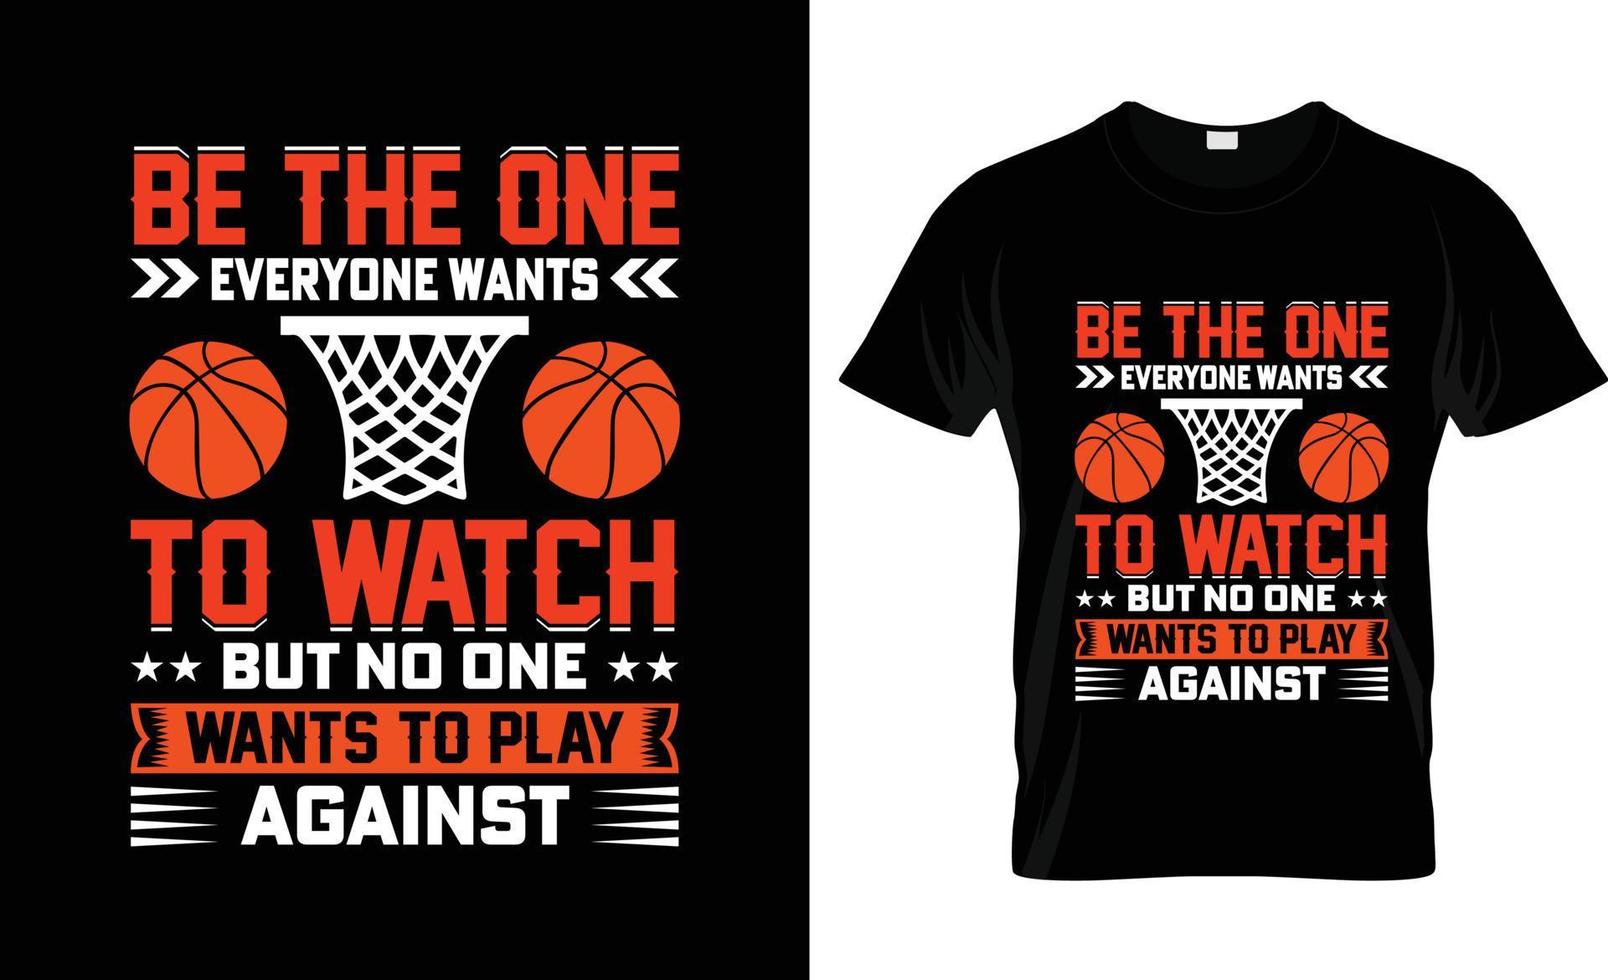 soyez celui que tout le monde veut regarder la conception de t-shirt de basket-ball, le slogan de t-shirt de basket-ball et la conception de vêtements, la typographie de basket-ball, le vecteur de basket-ball, l'illustration de basket-ball